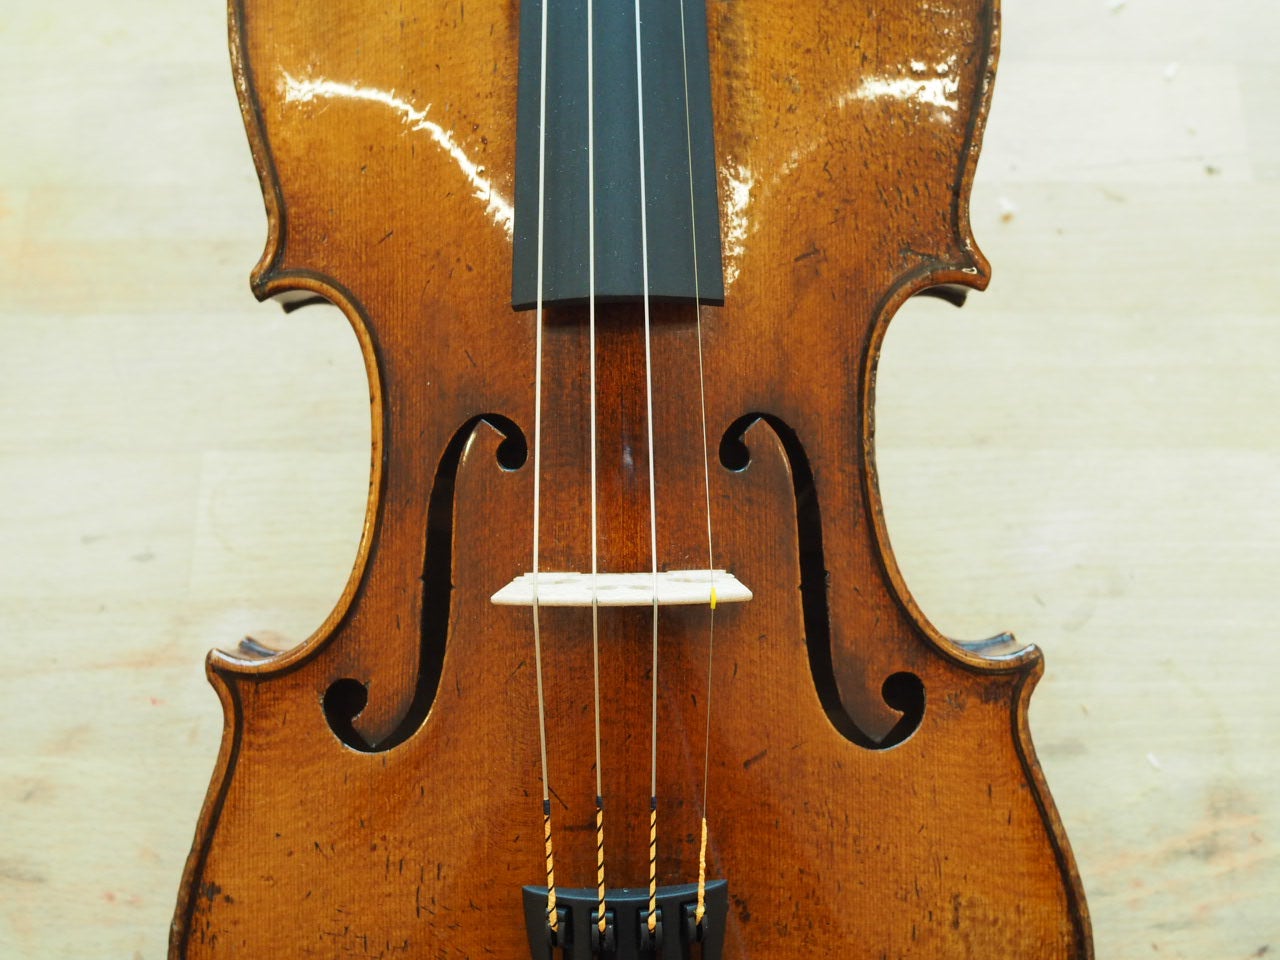 ドイツの量産楽器とマイスターの楽器の違いについて | ヴァイオリン 